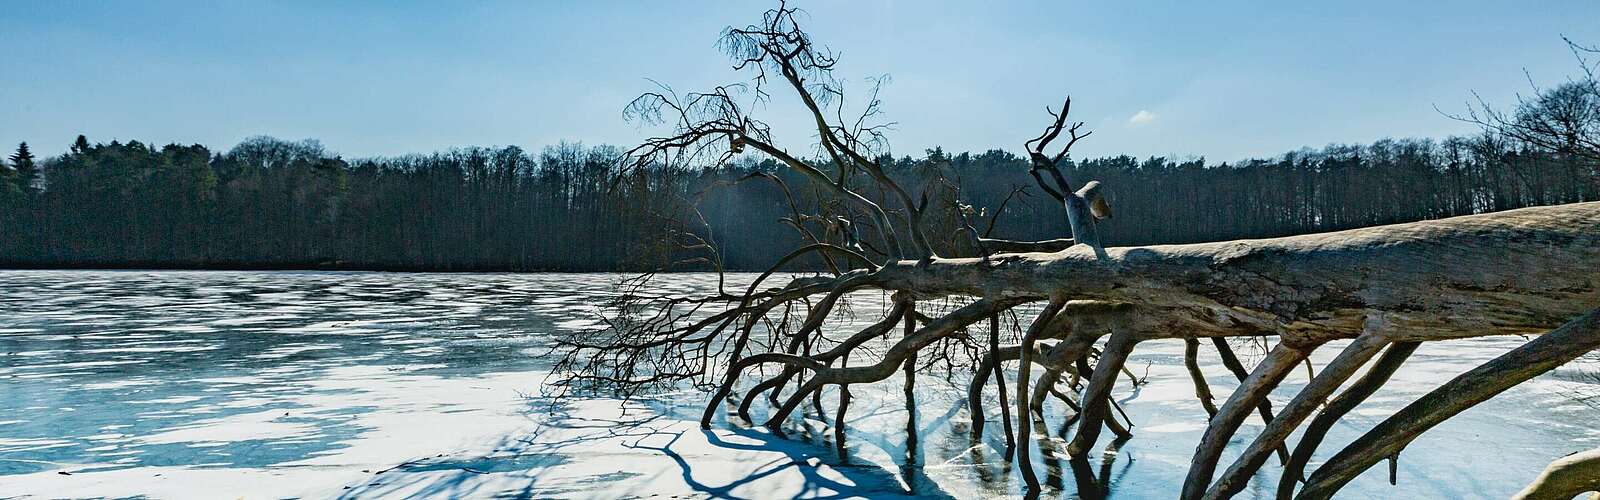 Winterlicher Hellsee im Barnim,
        
    

        Foto: TMB-Fotoarchiv/Steffen Lehmann